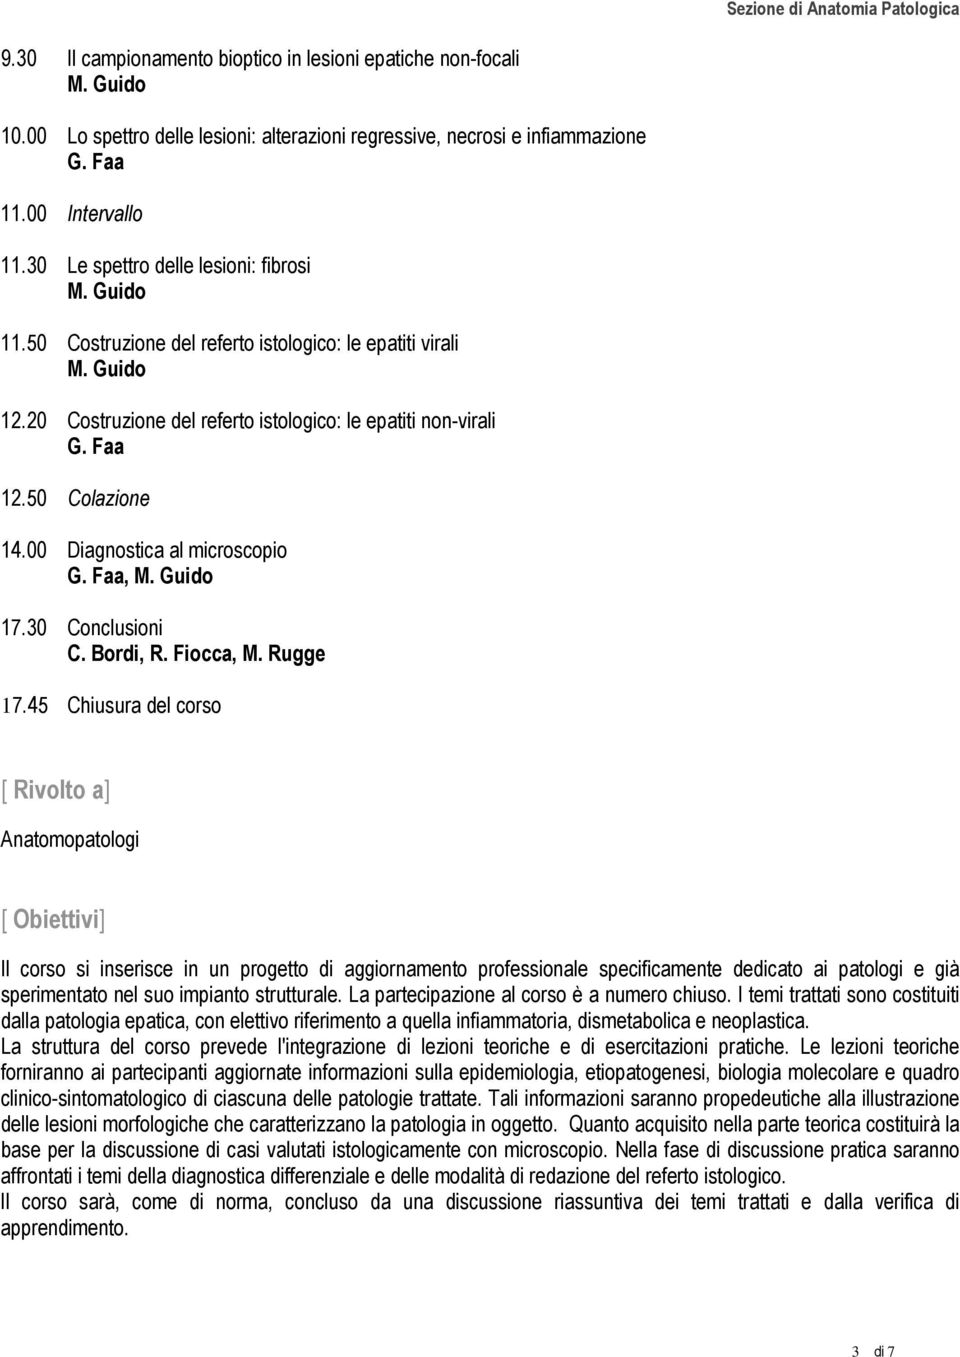 50 Colazione 14.00 Diagnostica al microscopio G. Faa, M. Guido 17.30 Conclusioni C. Bordi, R. Fiocca, M. Rugge 17.